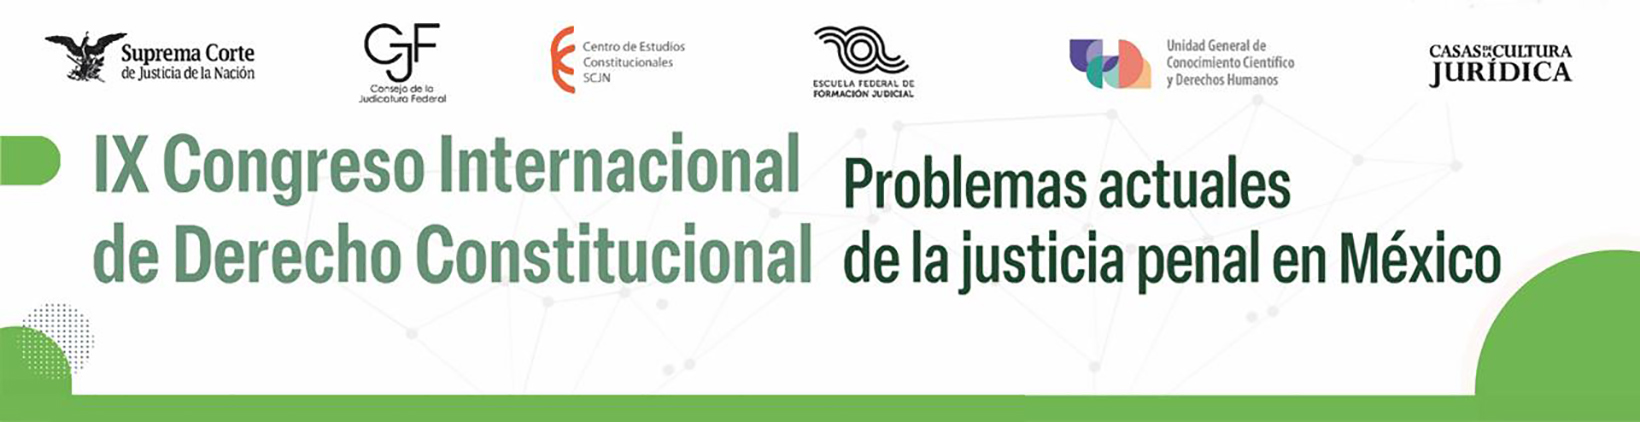 Banner del IX Congreso Internacional de Derecho Constitucional: Problemas actuales de la justicia penal en México